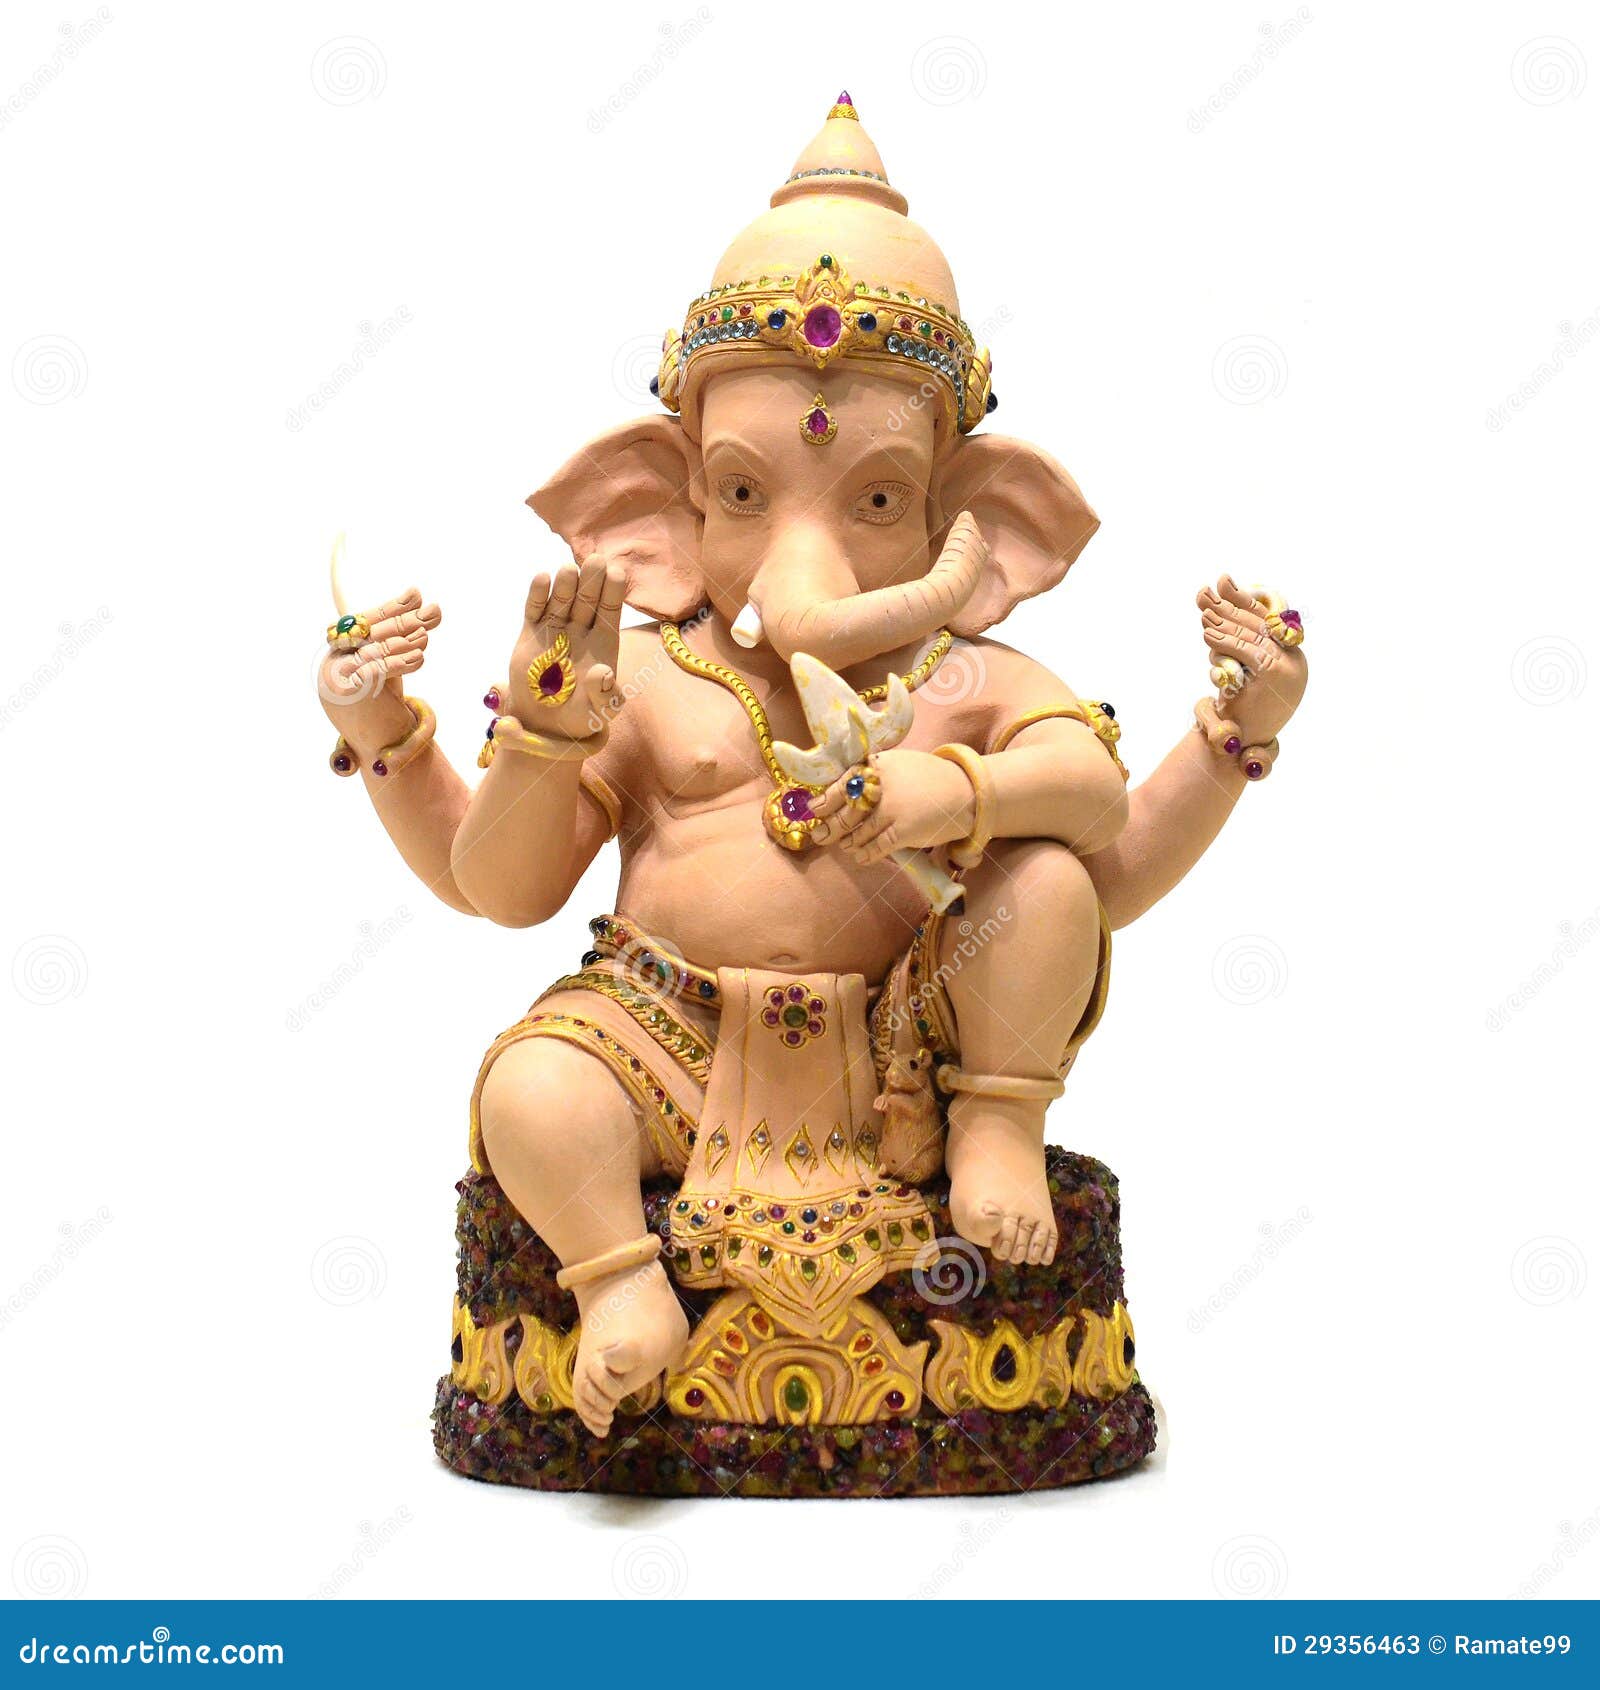 PAURO Hombre de Acero Inoxidable Ganesha Elefante Dios del Exito Suerte Colgante Collar Vendimia 